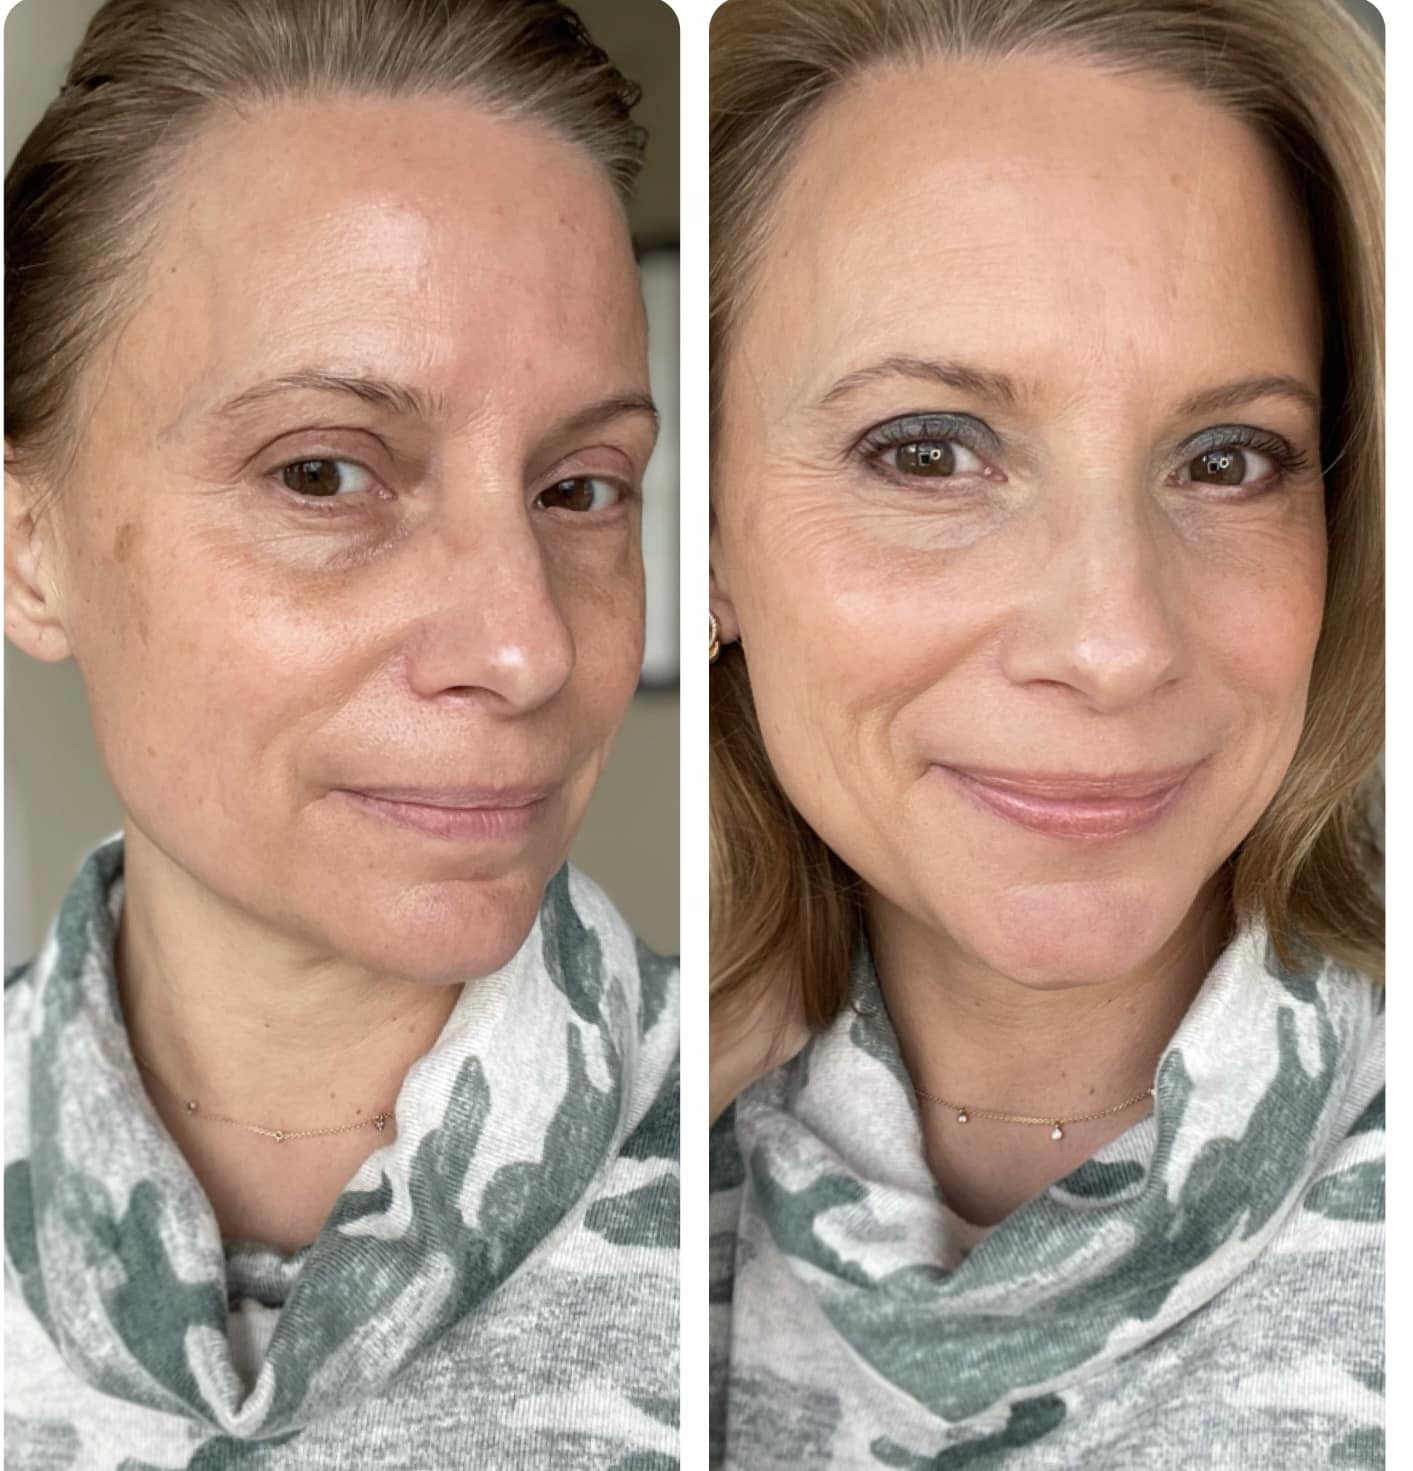 Seint Artist (Makeup Expert) – Heather Gilligan